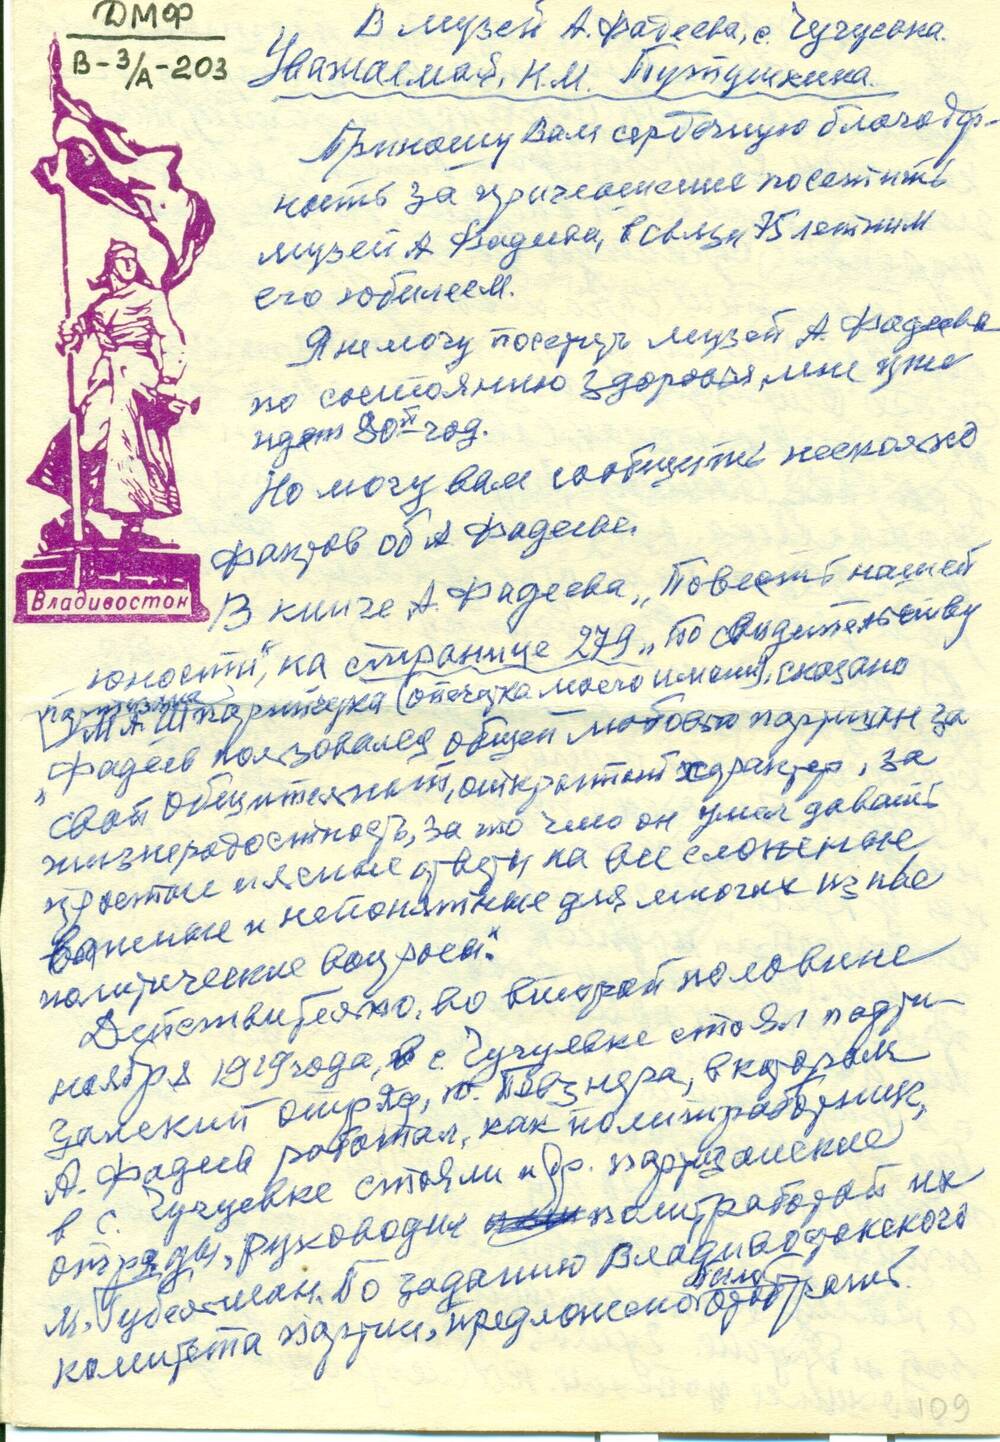 Письмо-воспоминания Шпарейчука М.А. о встречах с А.А.Фадеевым в годы Гражданской войны.1976г.